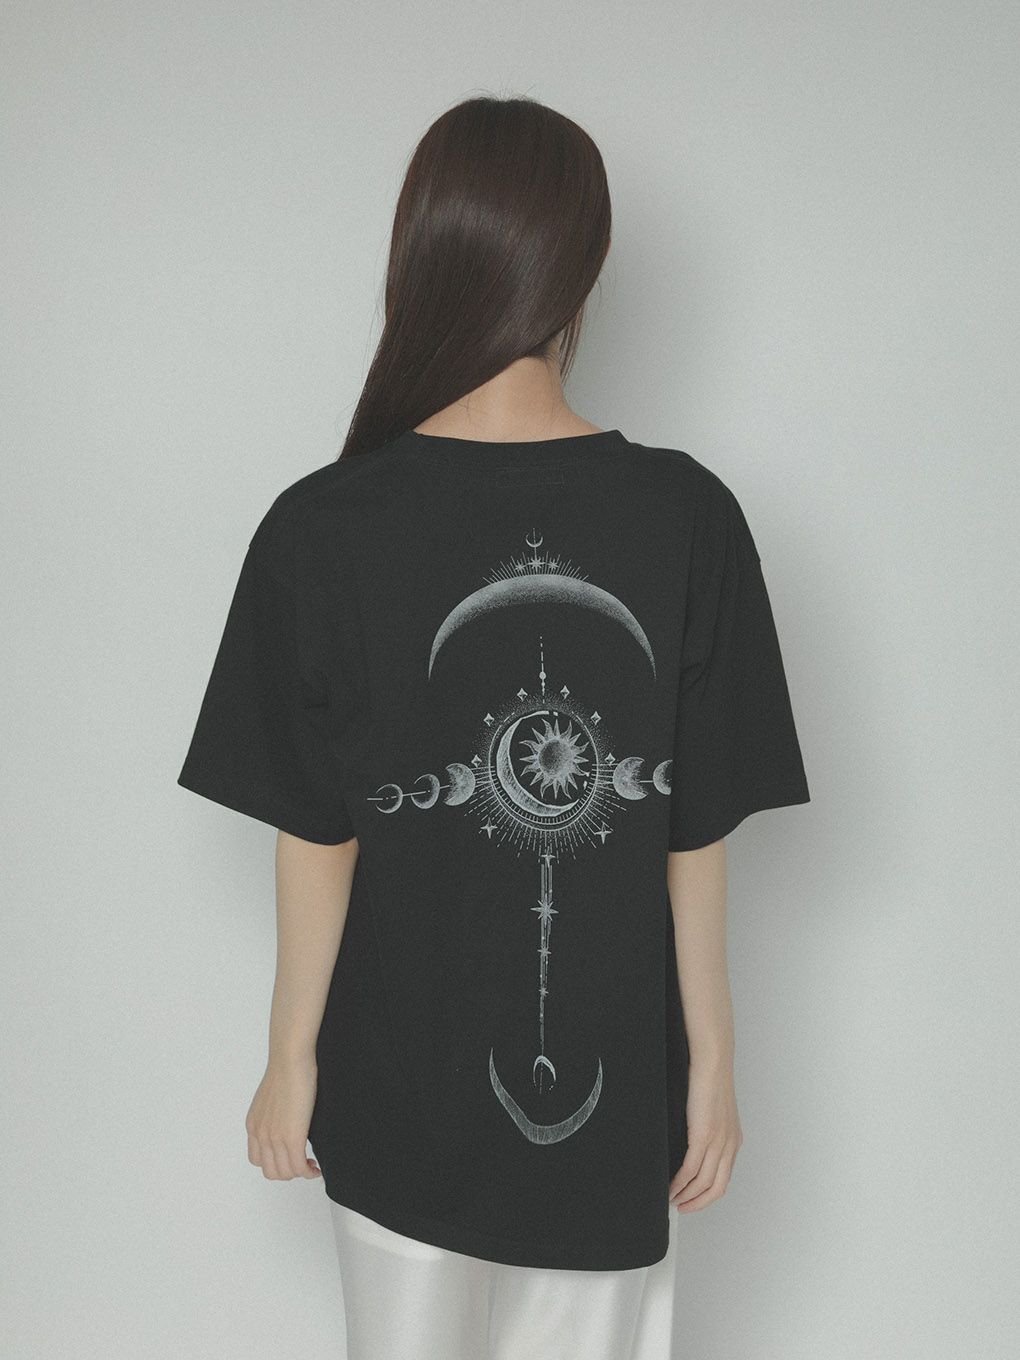 メルトザレディ horoscope T-shirt(cropped) 山羊座